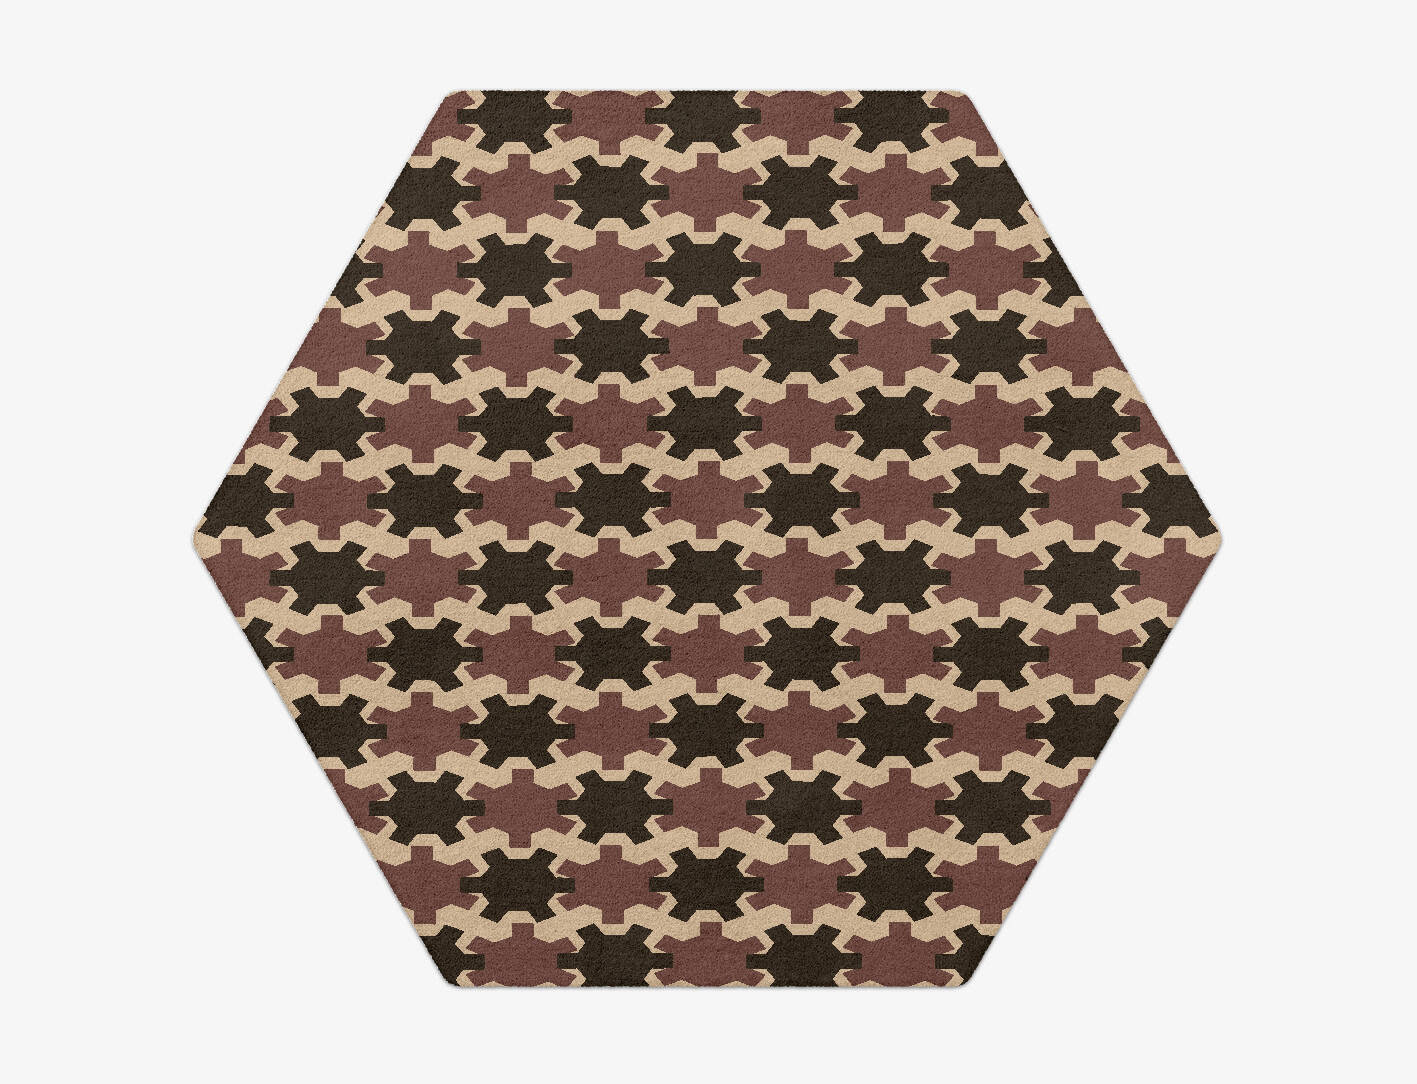 Gears Geometric Hexagon Hand Tufted Pure Wool Custom Rug by Rug Artisan